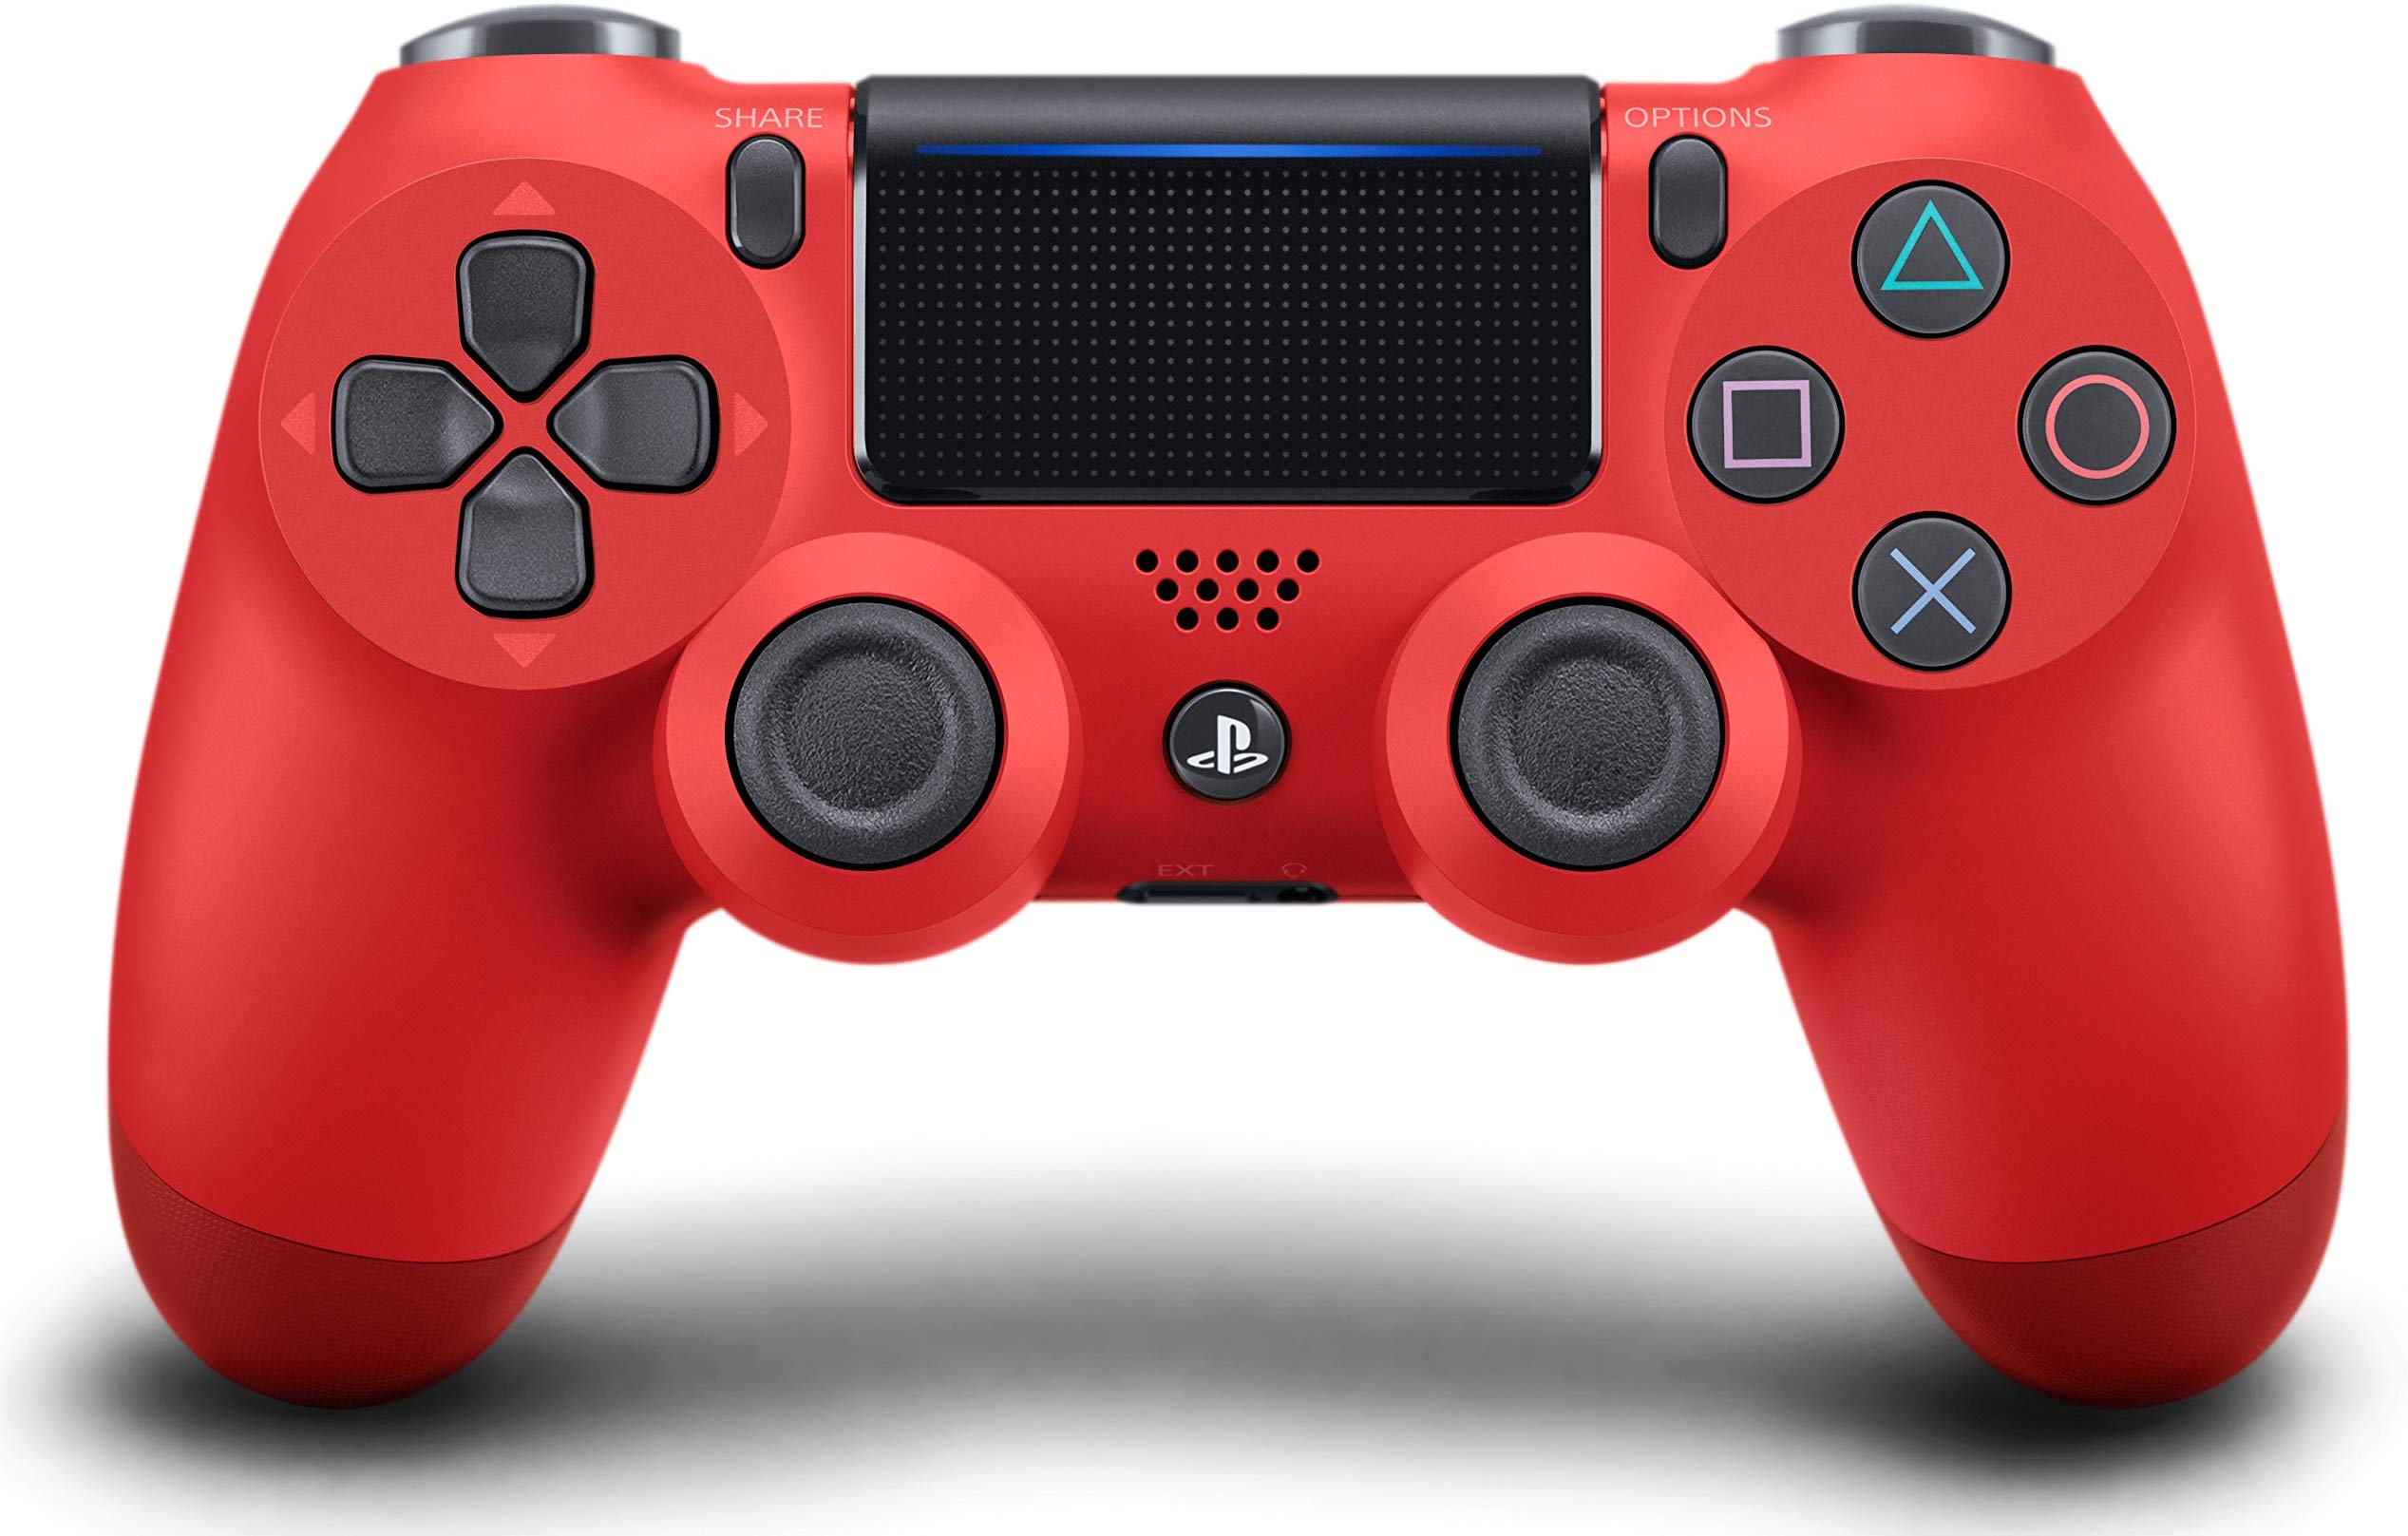 Pad bezprzewodowy DualShock 4 v2 do PS4 sony czerwony